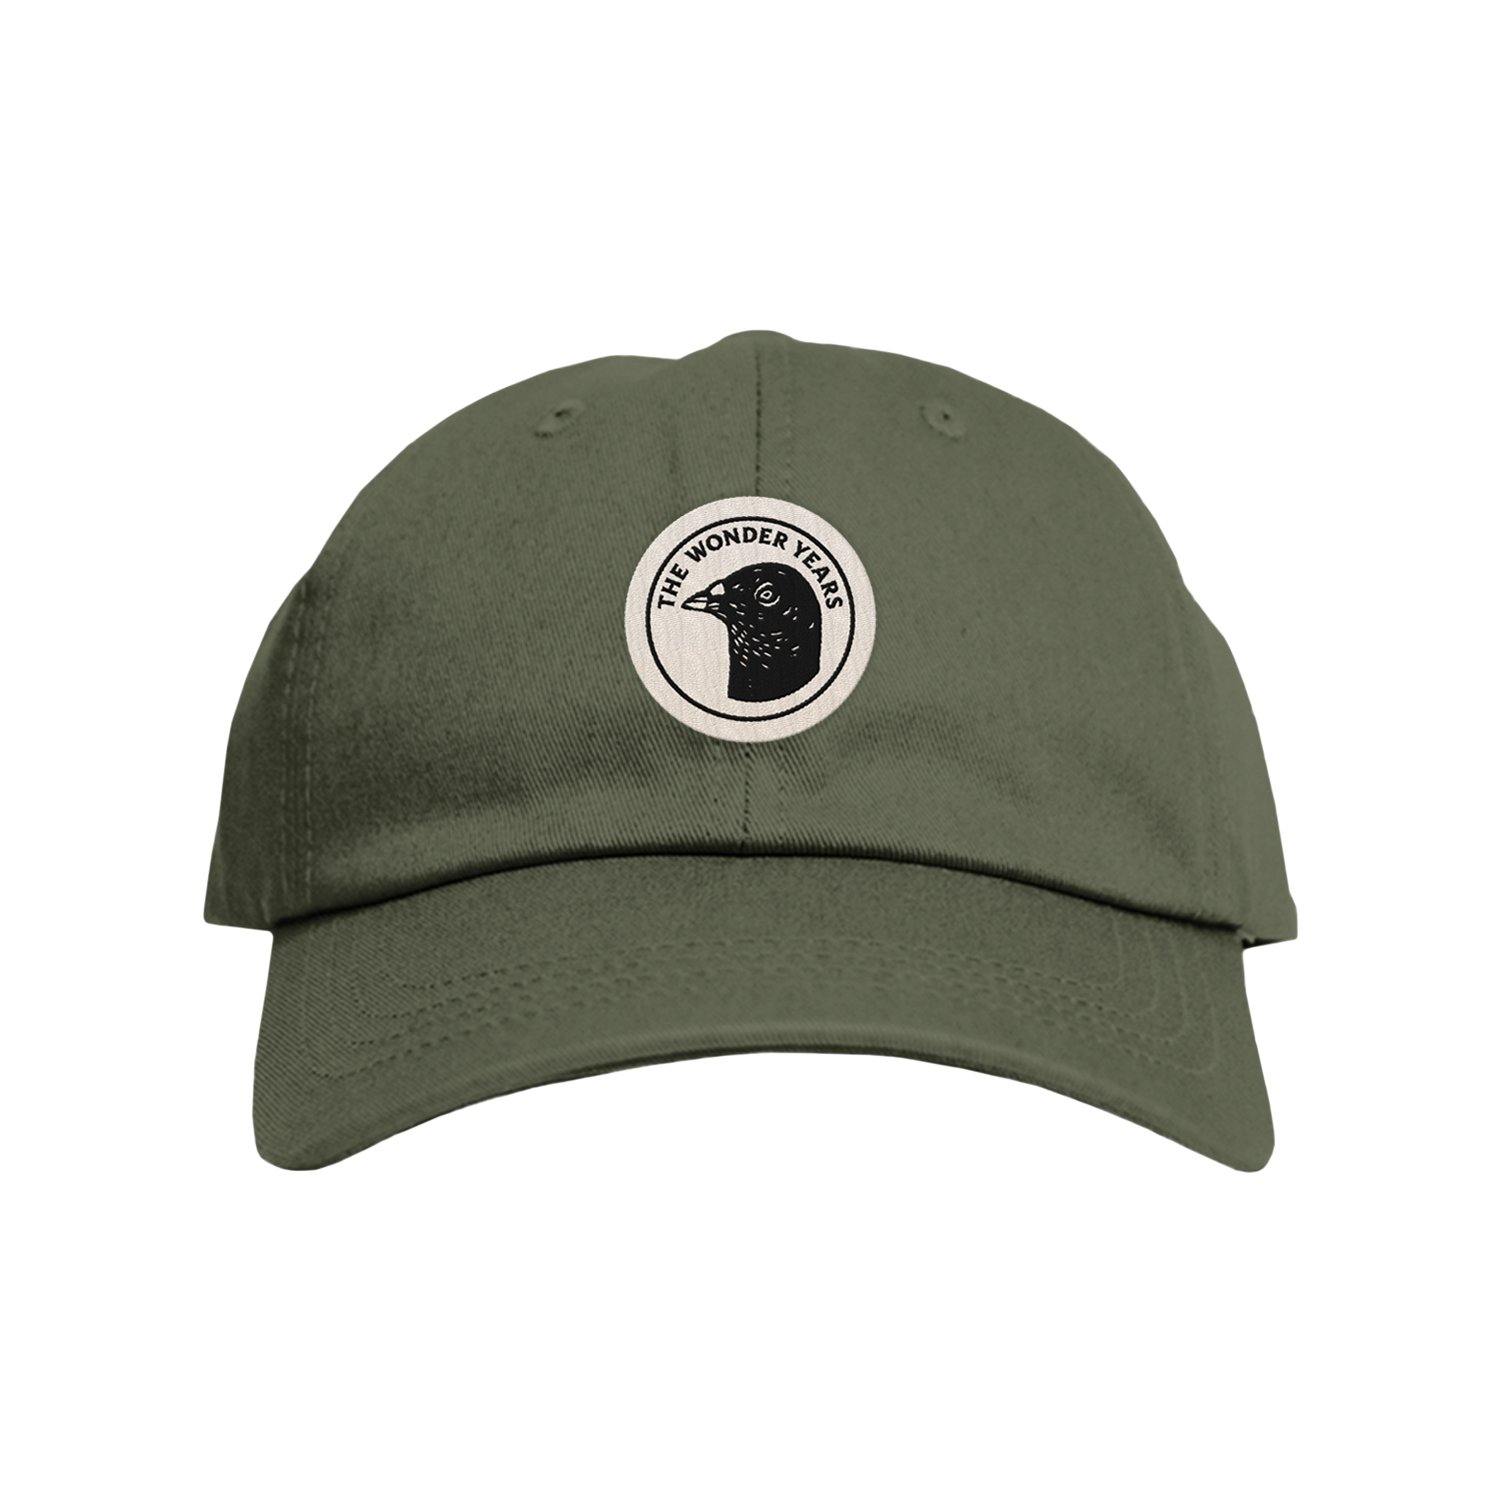 Buy – Pigeon Head Hat – The Wonder Years